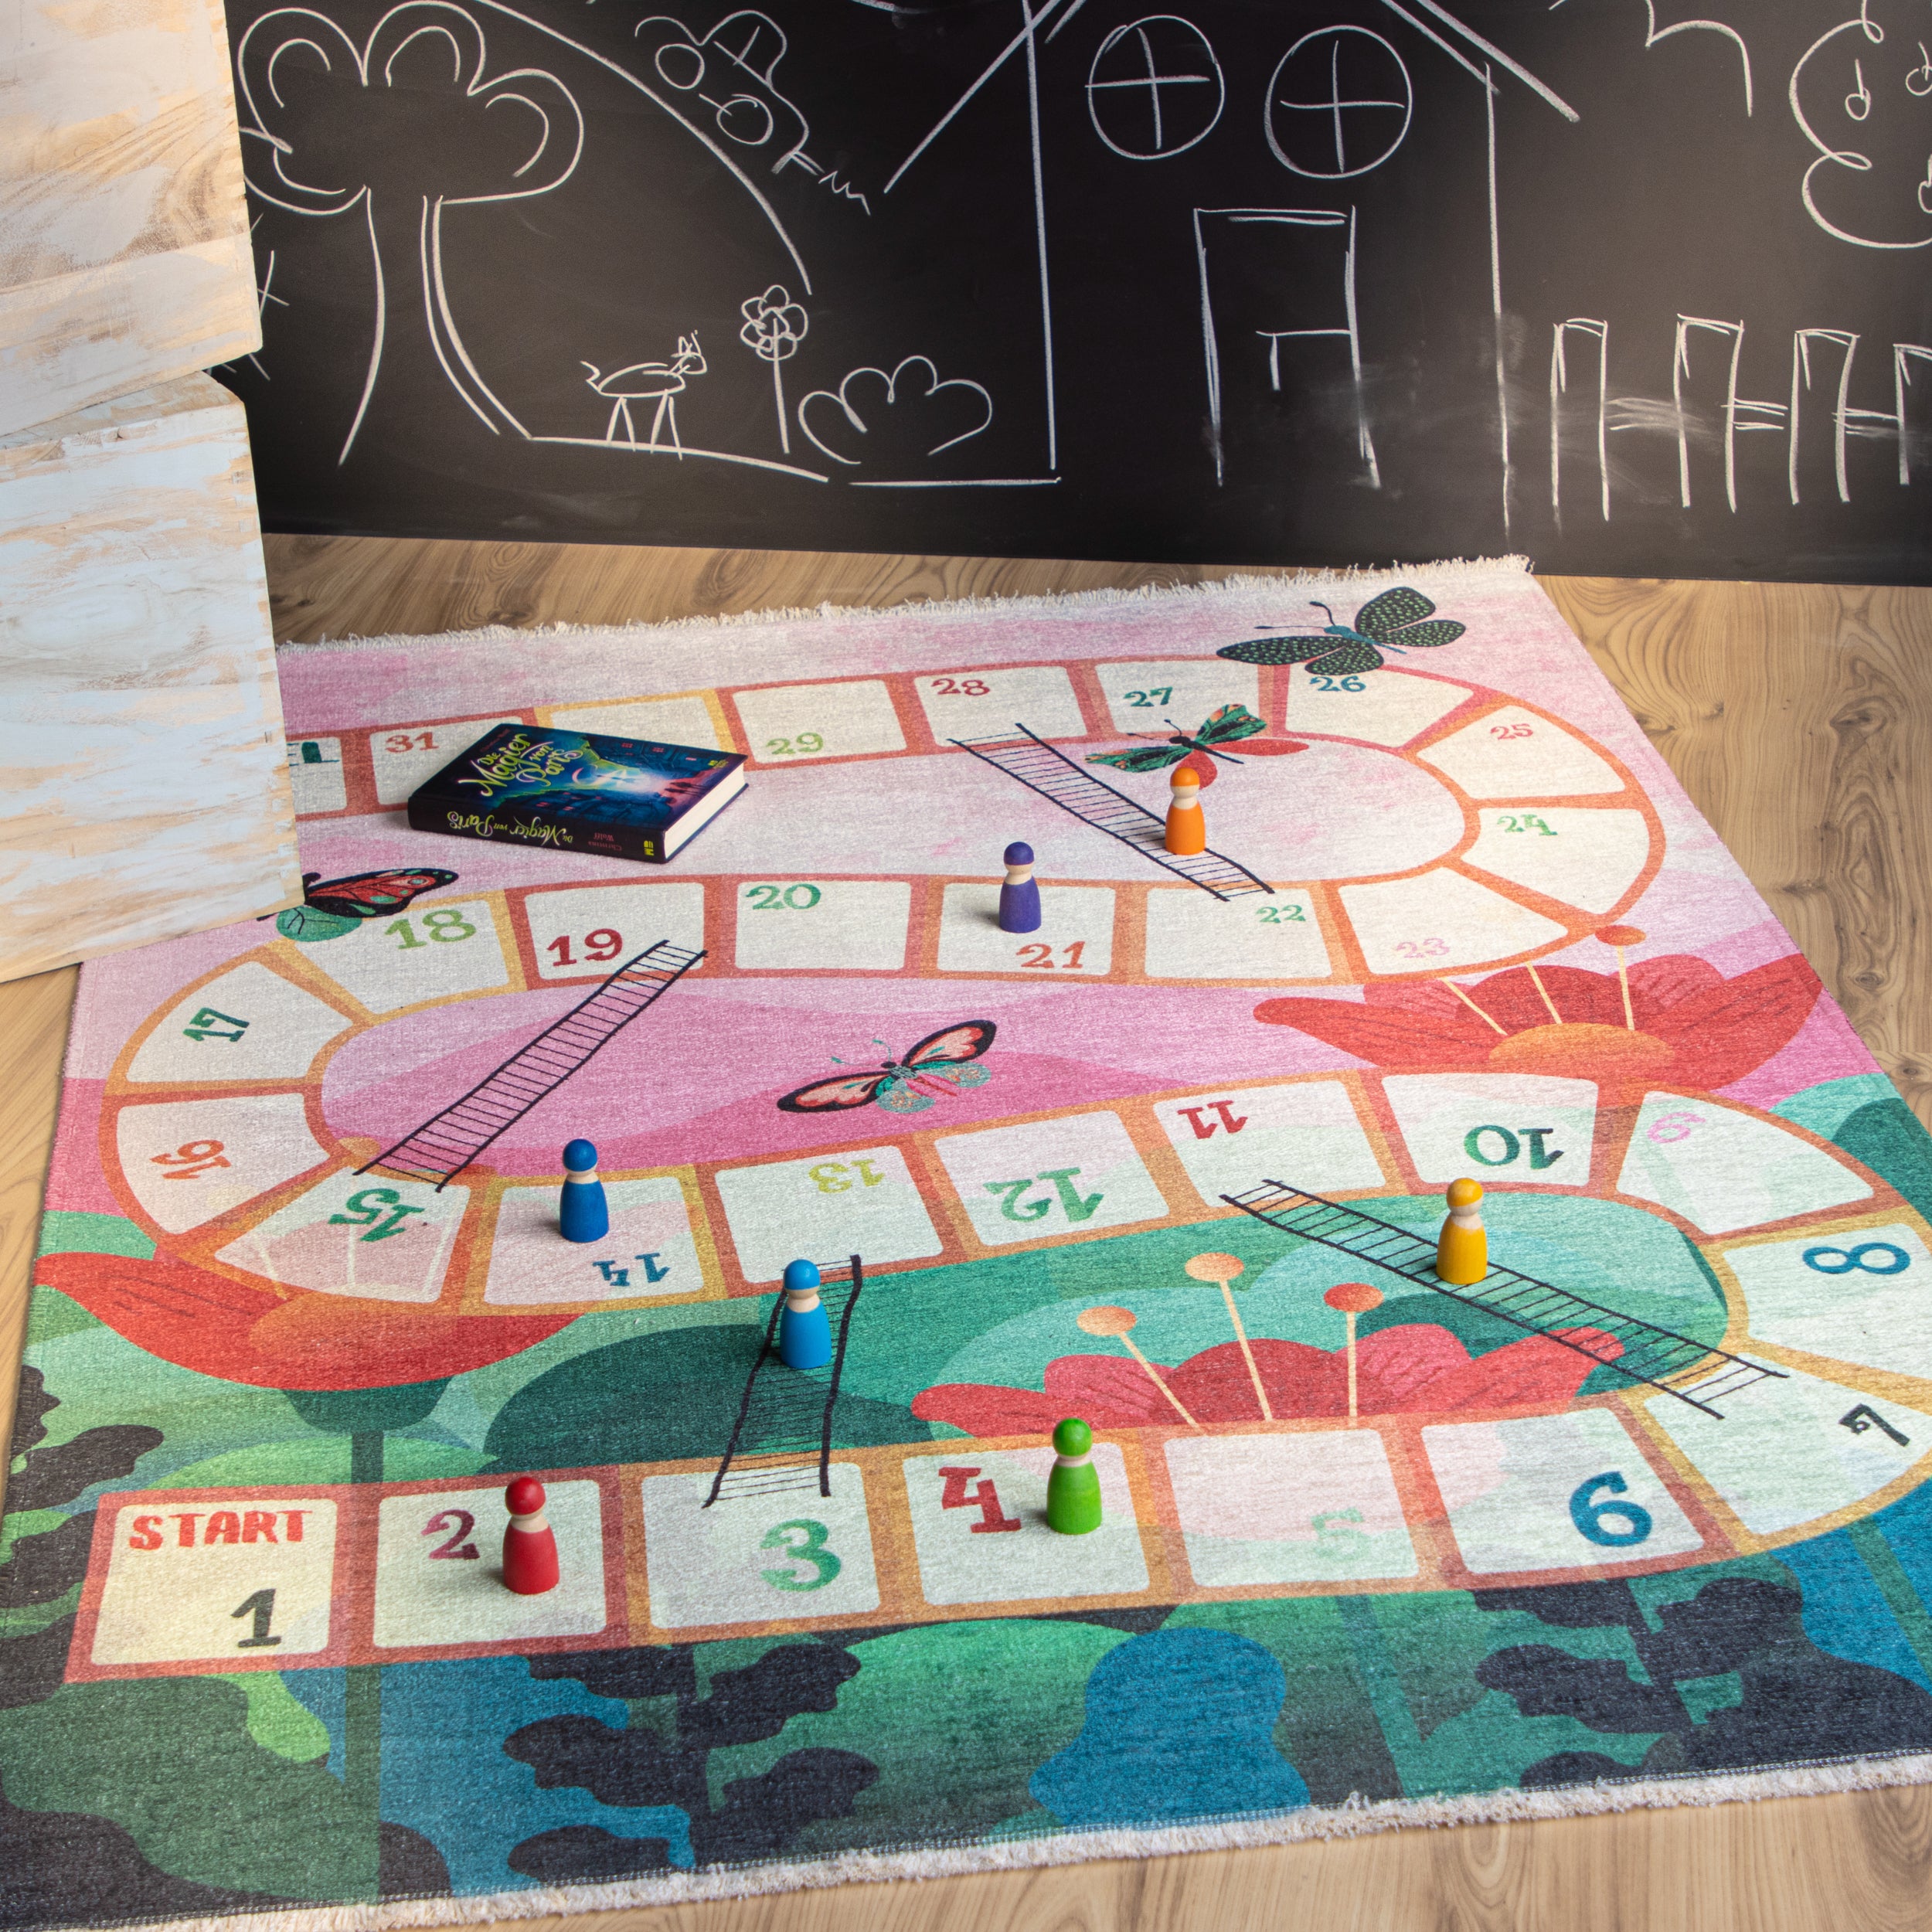 My Greta 620 Spiel Design Teppich: Für eine glückliche Kindheit und eine nachhaltige Zukunft